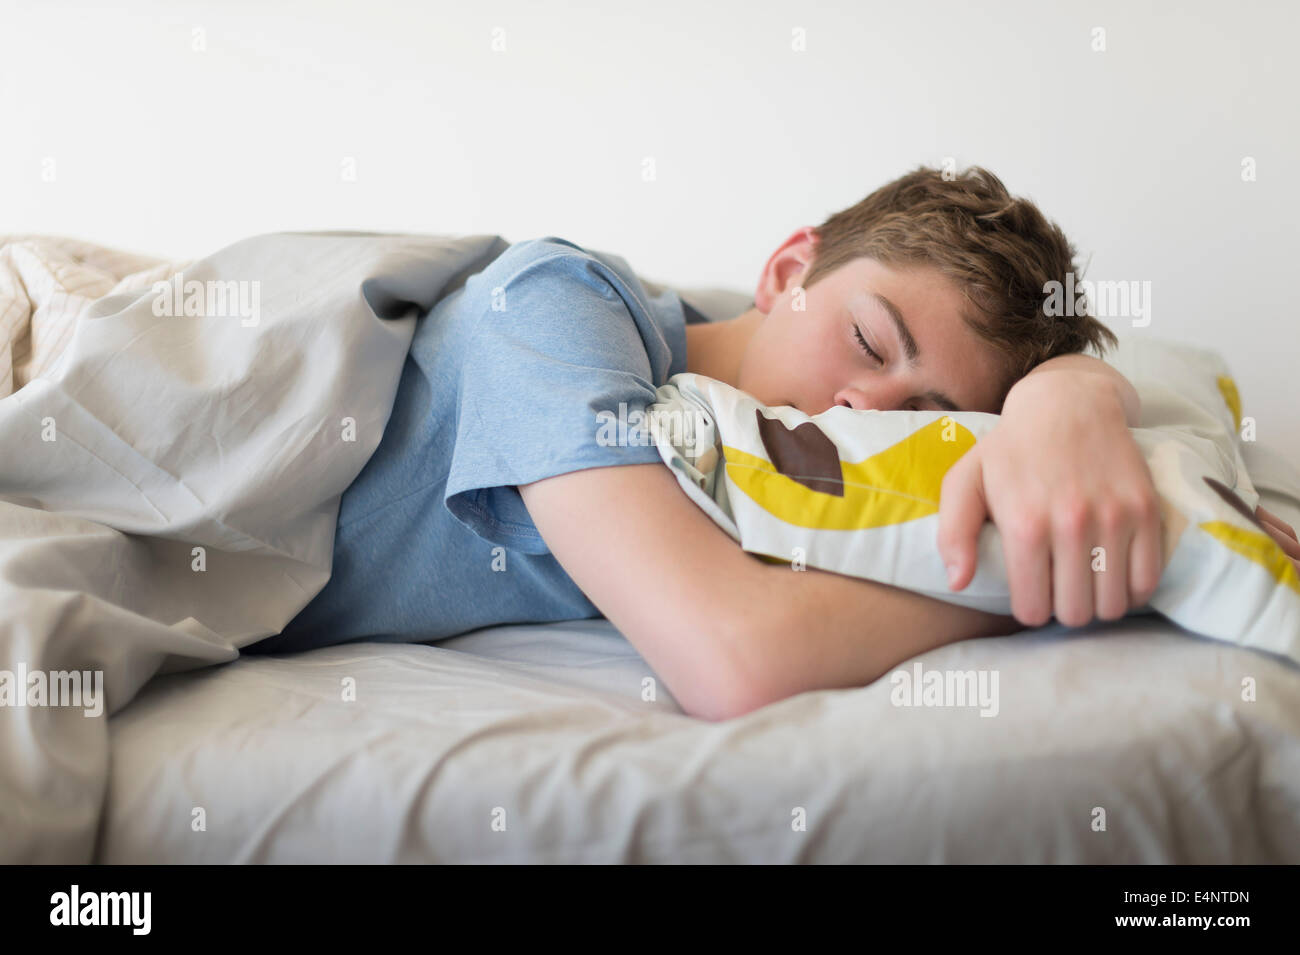 Adolescente (16-17) dormir en la cama Foto de stock